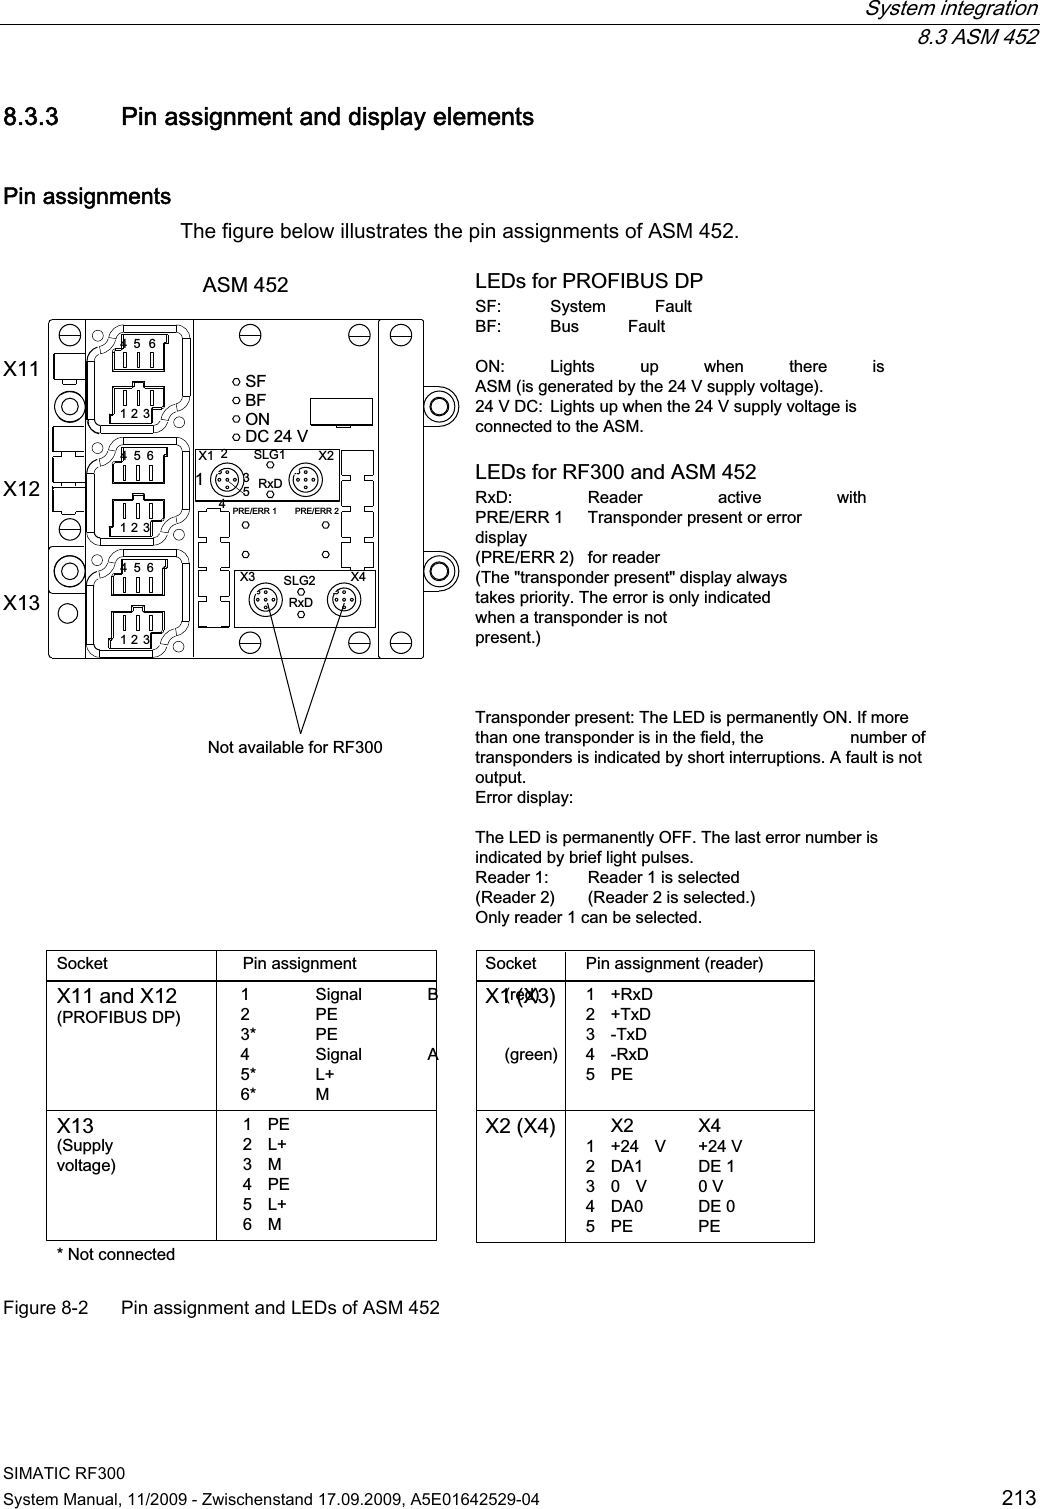  System integration  8.3 ASM 452 SIMATIC RF300 System Manual, 11/2009 - Zwischenstand 17.09.2009, A5E01642529-04  213 8.3.3 Pin assignment and display elements Pin assignments The figure below illustrates the pin assignments of ASM 452. 352),%86&apos;36RFNHW;DQG;3LQDVVLJQPHQW 6LJQDO % UHG 3( 3( 6LJQDO $ JUHHQ / 06XSSO\YROWDJH/(&apos;VIRU5)DQG$605[&apos; 5HDGHU DFWLYH ZLWK35((55 7UDQVSRQGHUSUHVHQWRUHUURU GLVSOD\35((55 IRUUHDGHU7KHWUDQVSRQGHUSUHVHQWGLVSOD\DOZD\VWDNHVSULRULW\7KHHUURULVRQO\LQGLFDWHGZKHQDWUDQVSRQGHULVQRWSUHVHQW7UDQVSRQGHUSUHVHQW7KH/(&apos;LVSHUPDQHQWO\21,IPRUHWKDQRQHWUDQVSRQGHULVLQWKHILHOGWKH  QXPEHURIWUDQVSRQGHUVLVLQGLFDWHGE\VKRUWLQWHUUXSWLRQV$IDXOWLVQRWRXWSXW(UURUGLVSOD\7KH/(&apos;LVSHUPDQHQWO\2))7KHODVWHUURUQXPEHULVLQGLFDWHGE\EULHIOLJKWSXOVHV5HDGHU 5HDGHULVVHOHFWHG5HDGHU 5HDGHULVVHOHFWHG2QO\UHDGHUFDQEHVHOHFWHG/(&apos;VIRU352),%86&apos;36) 6\VWHP )DXOW%) %XV )DXOW21 /LJKWV XS ZKHQ WKHUH LV$60LVJHQHUDWHGE\WKH9VXSSO\YROWDJH9&apos;&amp; /LJKWVXSZKHQWKH9VXSSO\YROWDJHLVFRQQHFWHGWRWKH$601RWFRQQHFWHG3LQDVVLJQPHQWUHDGHU6RFNHW1RWDYDLODEOHIRU5);;;;$60; ;; ;;;;&apos;&amp;95[&apos;35((556/*5[&apos;6/*35((556)%)21 3( / 0 3( / 0; 5[&apos; 7[&apos; 7[&apos; 5[&apos; 3(; ;  9 9 &apos;$ &apos;(  9 9 &apos;$ &apos;( 3( 3( Figure 8-2  Pin assignment and LEDs of ASM 452 